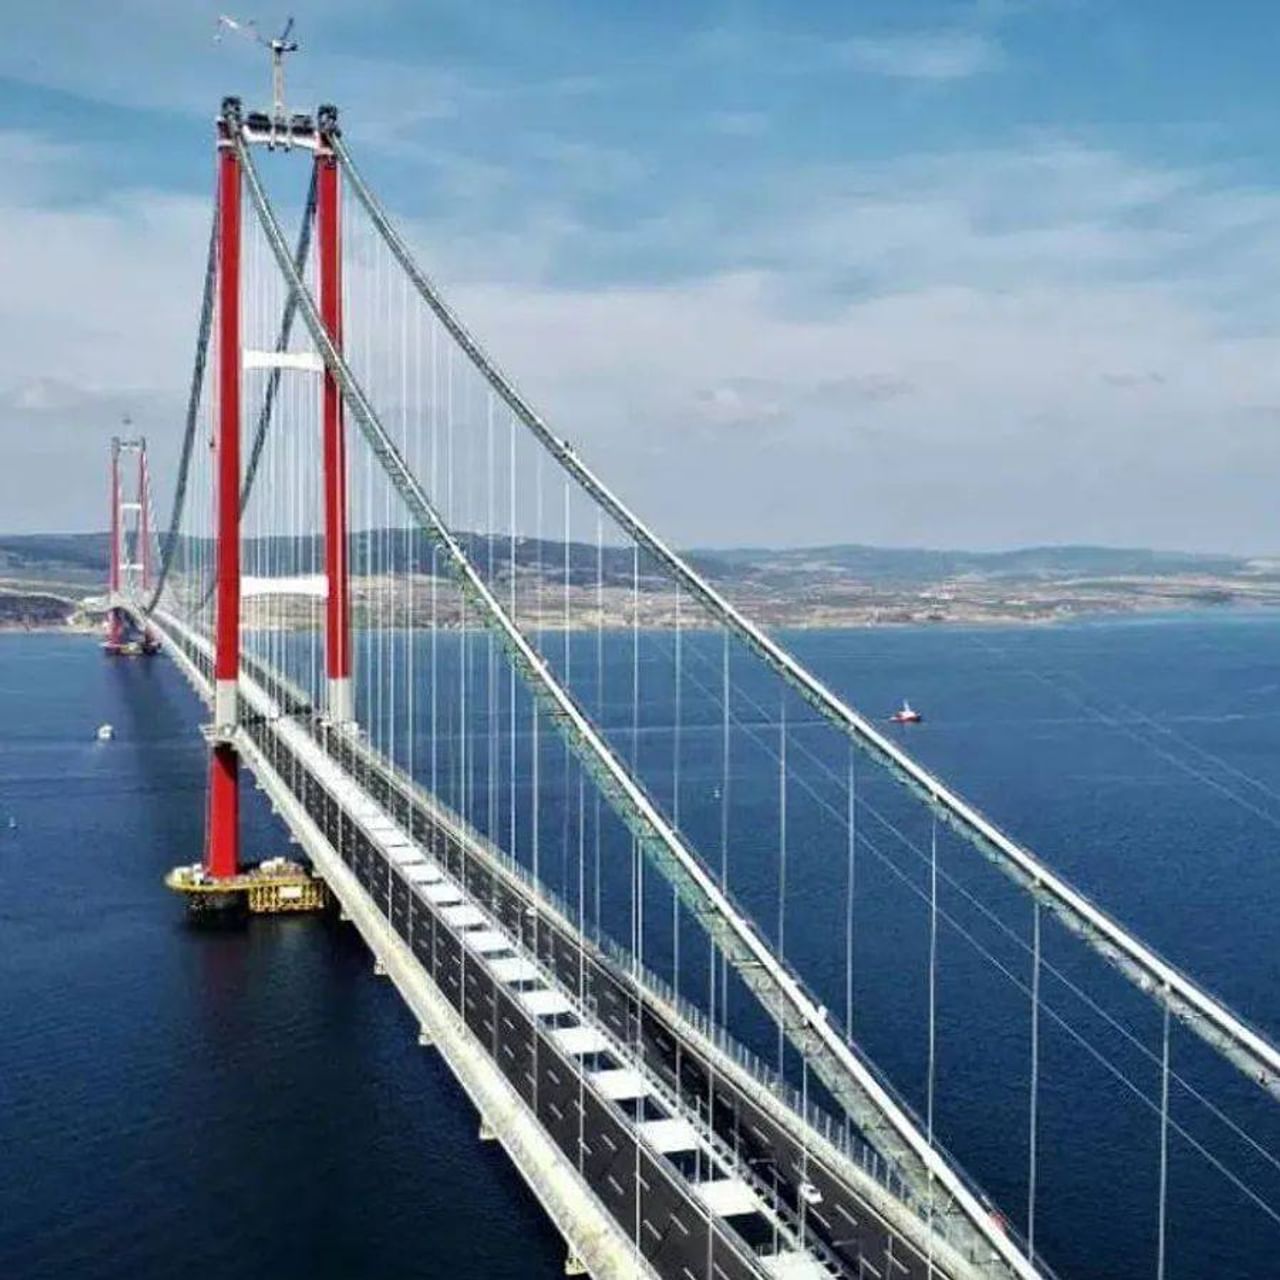 યુરોપ (Europe) અને એશિયાને જોડતો વિશ્વનો સૌથી લાંબો સસ્પેન્શન બ્રિજ (World's Longest Suspension Bridge) સામાન્ય લોકો માટે ખુલ્લો મુકવામાં આવ્યો છે. તુર્કીમાં બનેલો આ પુલ અનેક રીતે ખાસ છે. 20,503 કરોડના ખર્ચે બનેલા આ પુલને પૂર્ણ થતાં 5 વર્ષ લાગ્યા છે. તેને તુર્કી (Turkey) અને દક્ષિણ કોરિયાની (South Korea) એક કંપનીએ સંયુક્ત રીતે તૈયાર કર્યો છે. જાણો, આ બ્રિજની ખાસિયતો અને તેનાથી સામાન્ય લોકોને કેટલી રાહત મળશે.